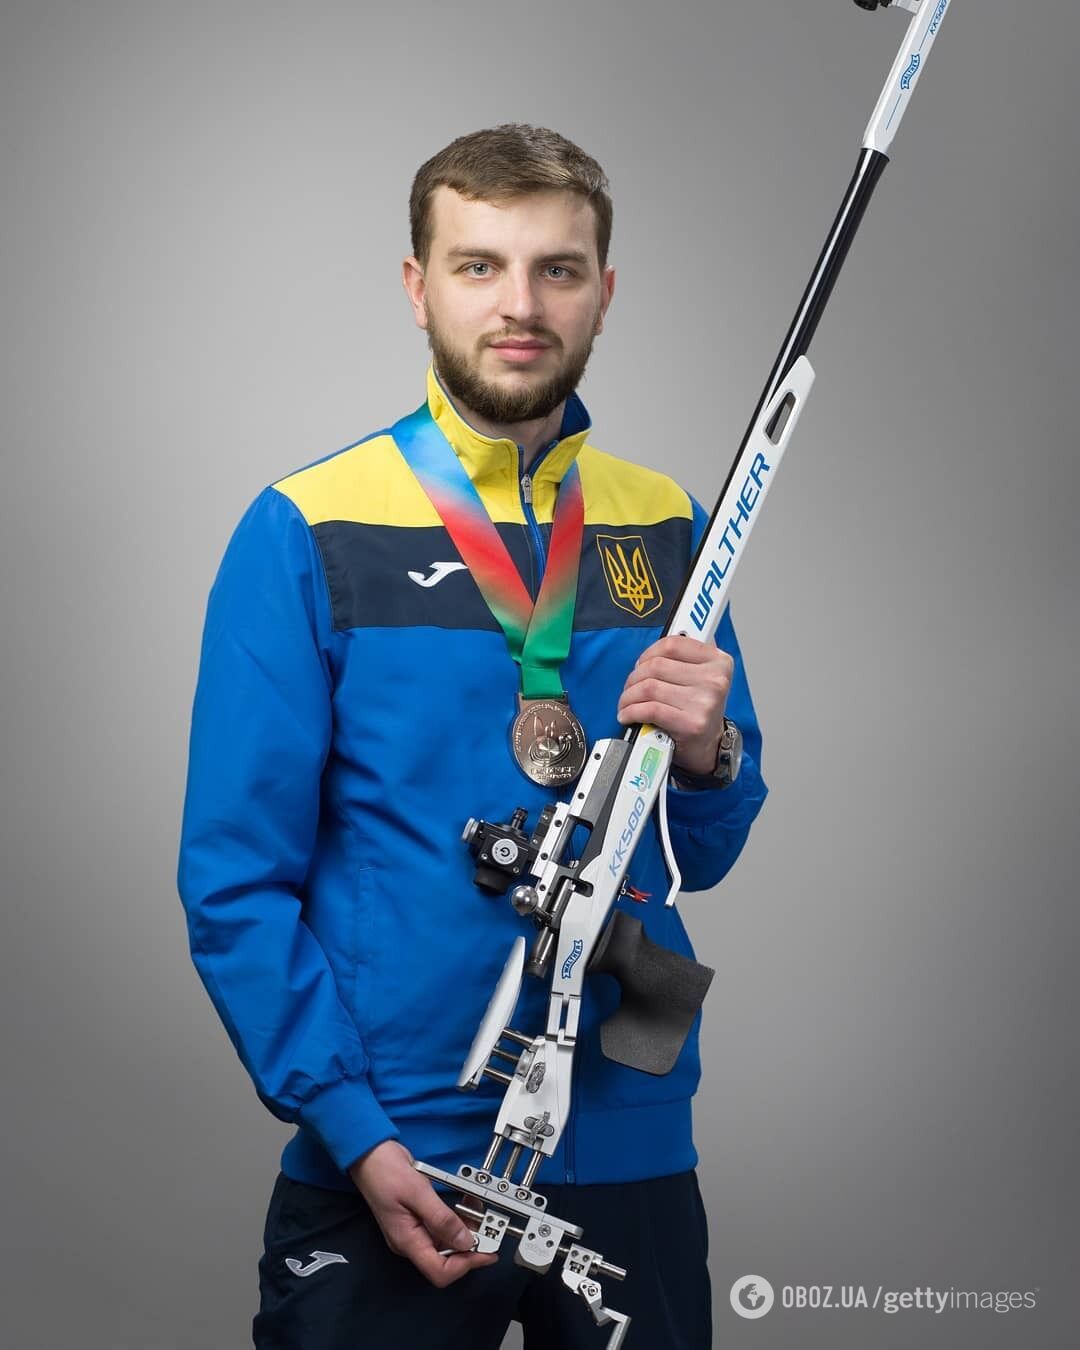 Українець виграв чемпіонат світу зі стрільби. Відео